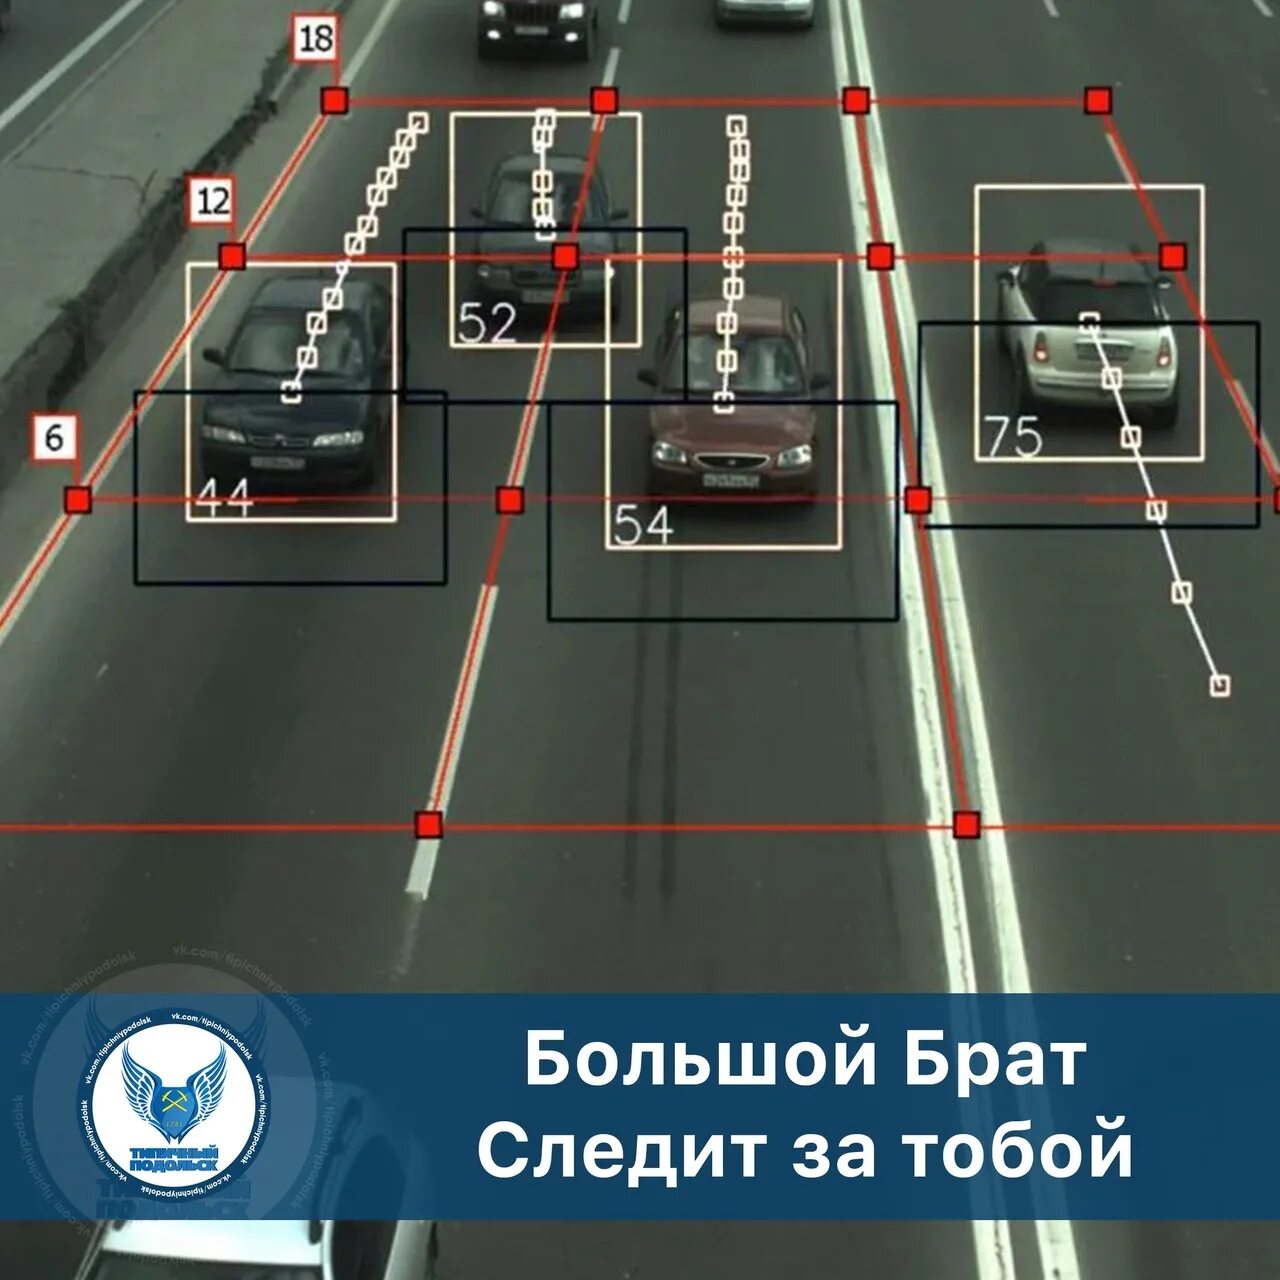 Новые автомобильные правила. Дорожные камеры видеонаблюдения. Камера контроля скорости. Камеры видеонаблюдения на дорогах. Камера фиксации скорости.